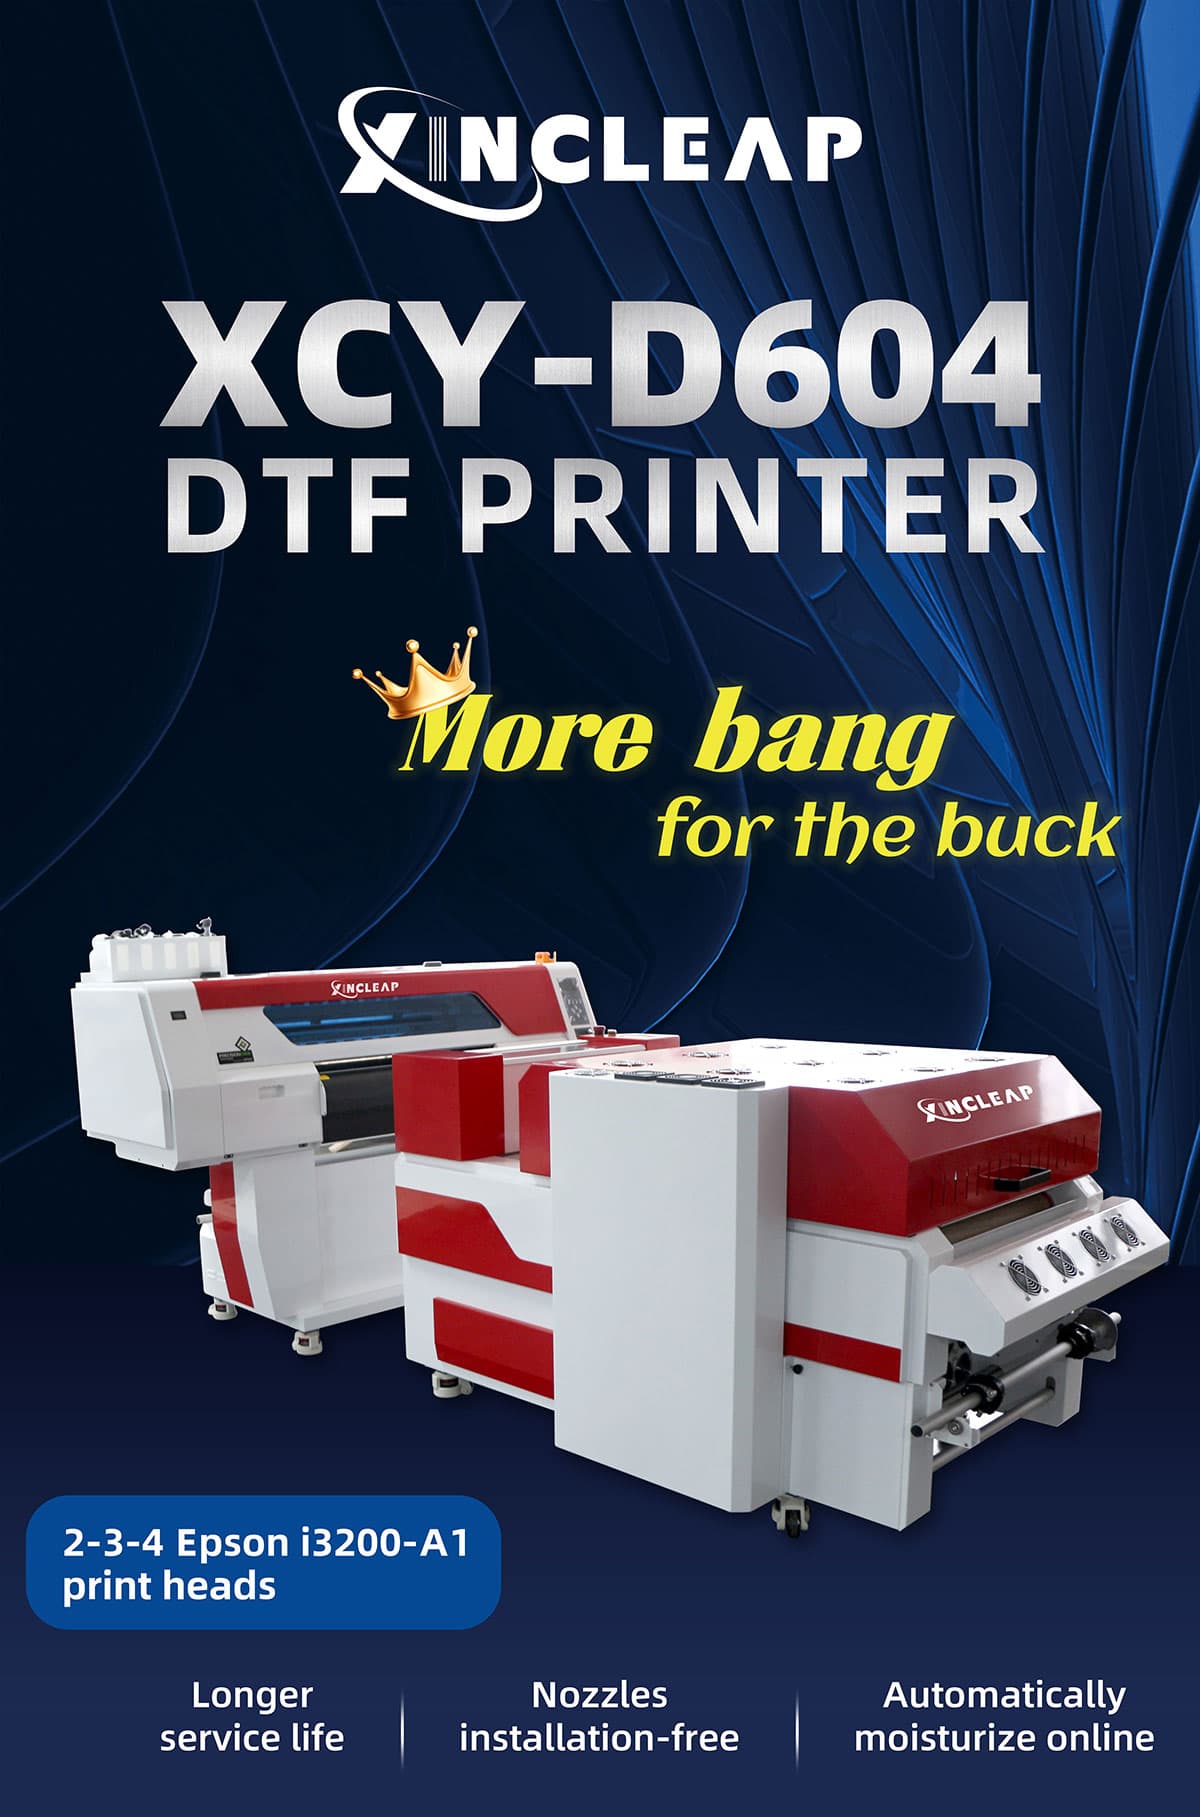 D604 DTF Printer